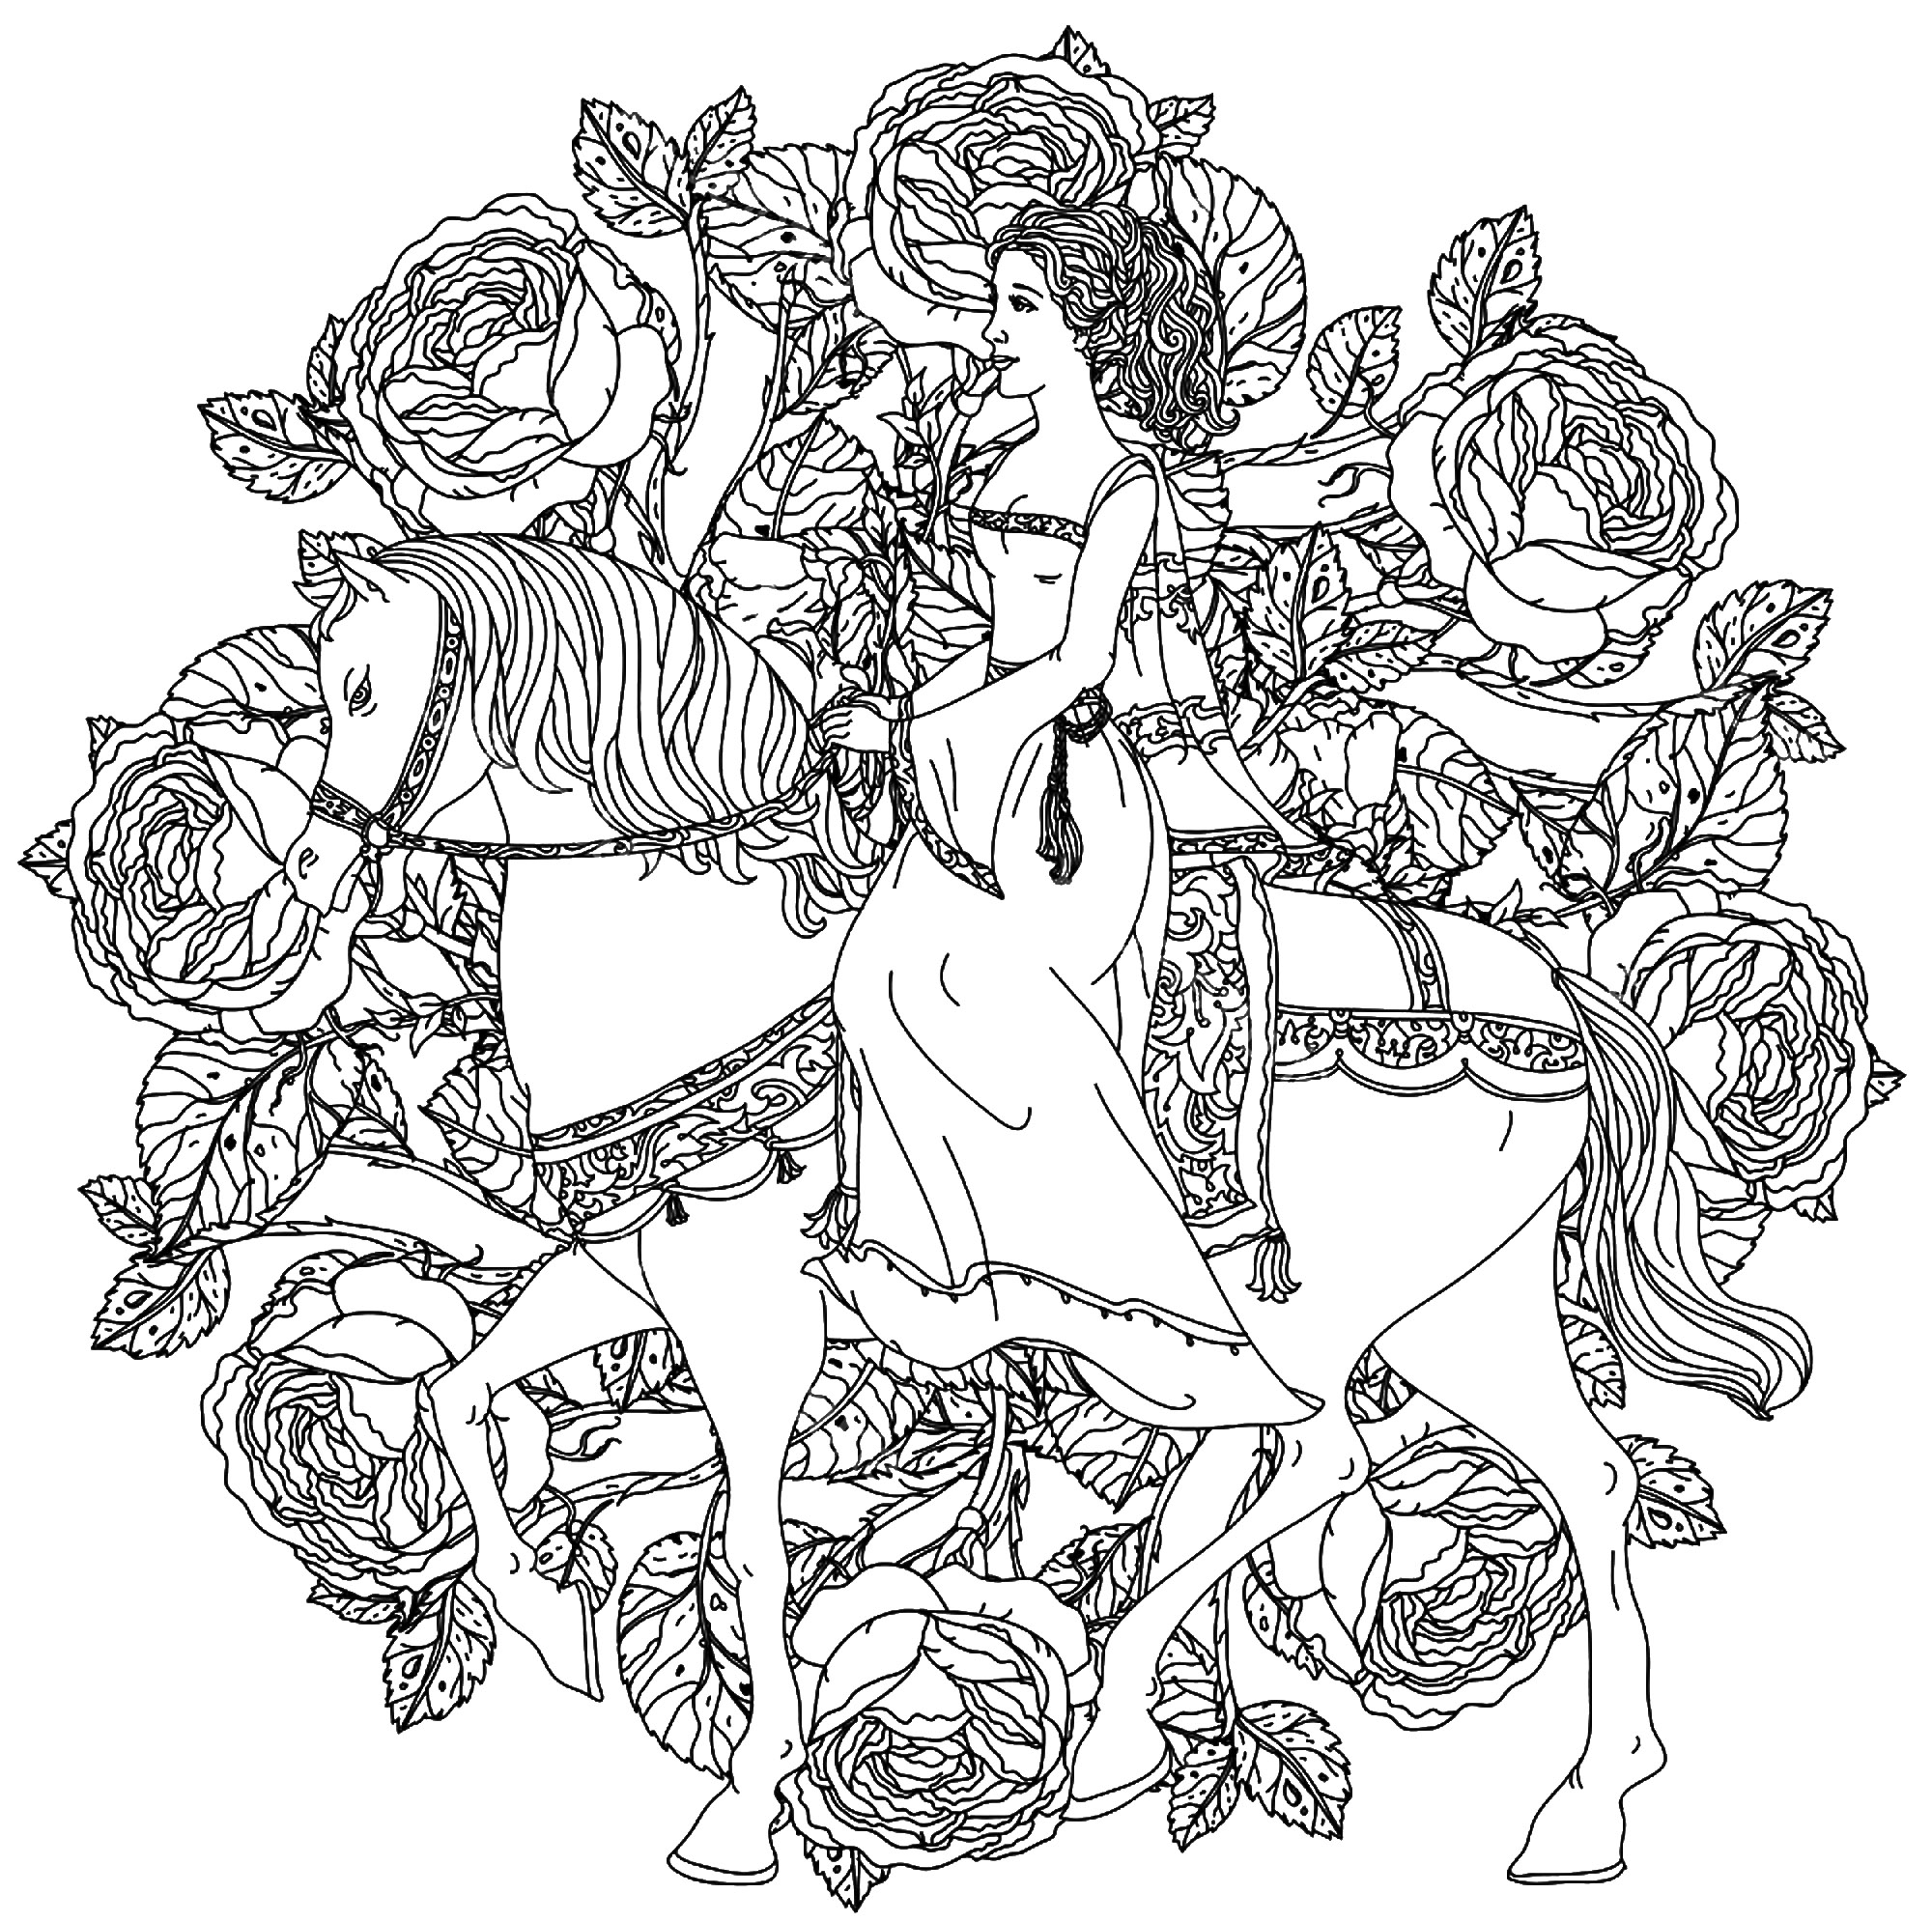 Una bella y elegante princesa, montada en su caballo blanco, en el centro de un mandala compuesto de rosas